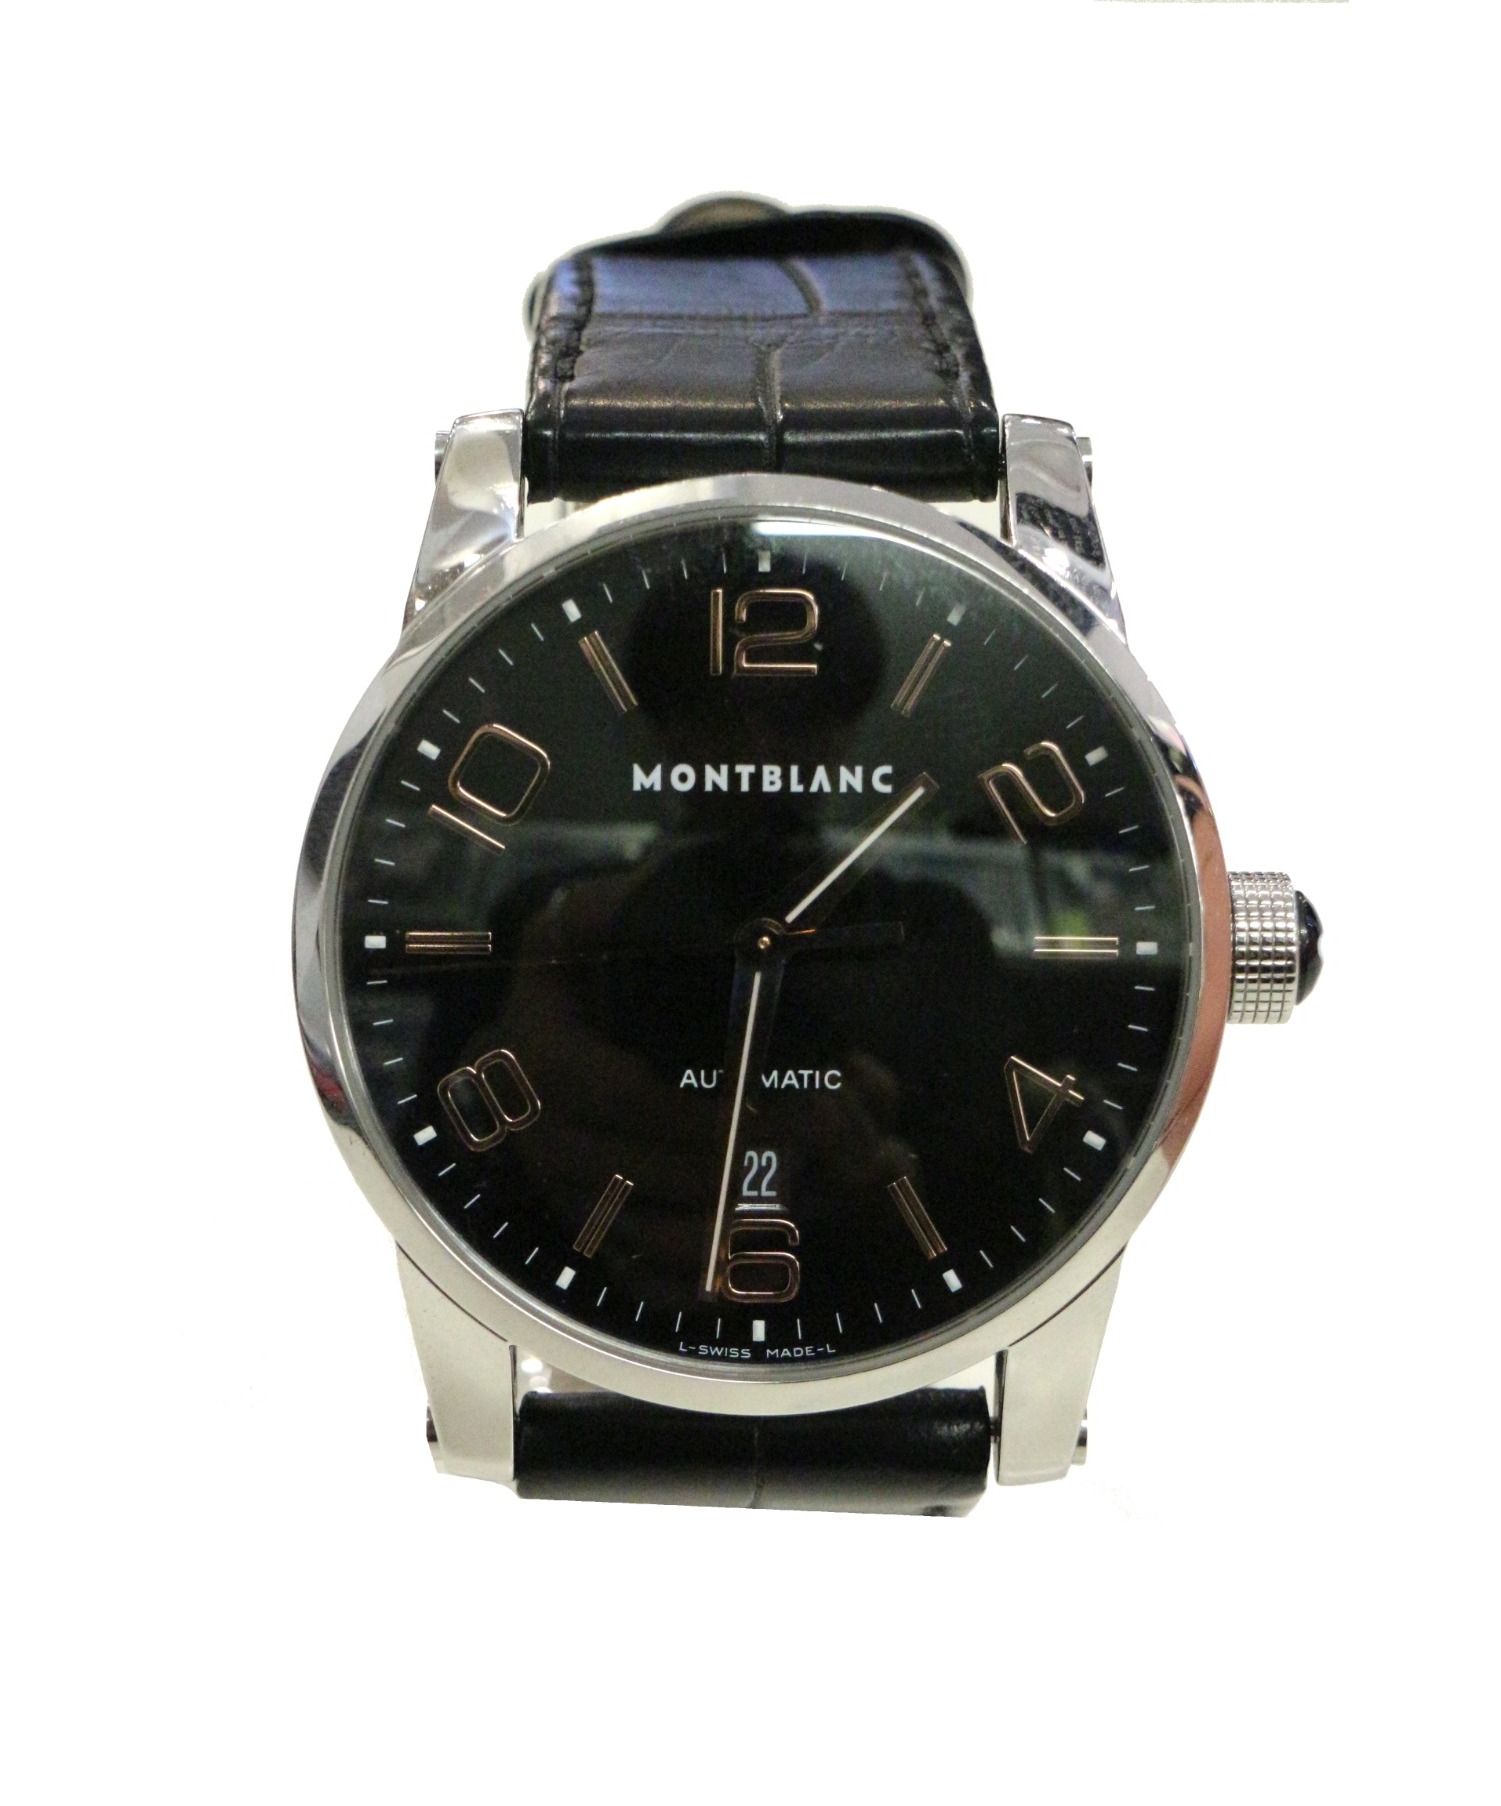 MONTBLANC (モンブラン) 腕時計 サイズ:下記参照 タイムウォーカー 7070 オートマチック PB305492 BKダイヤル